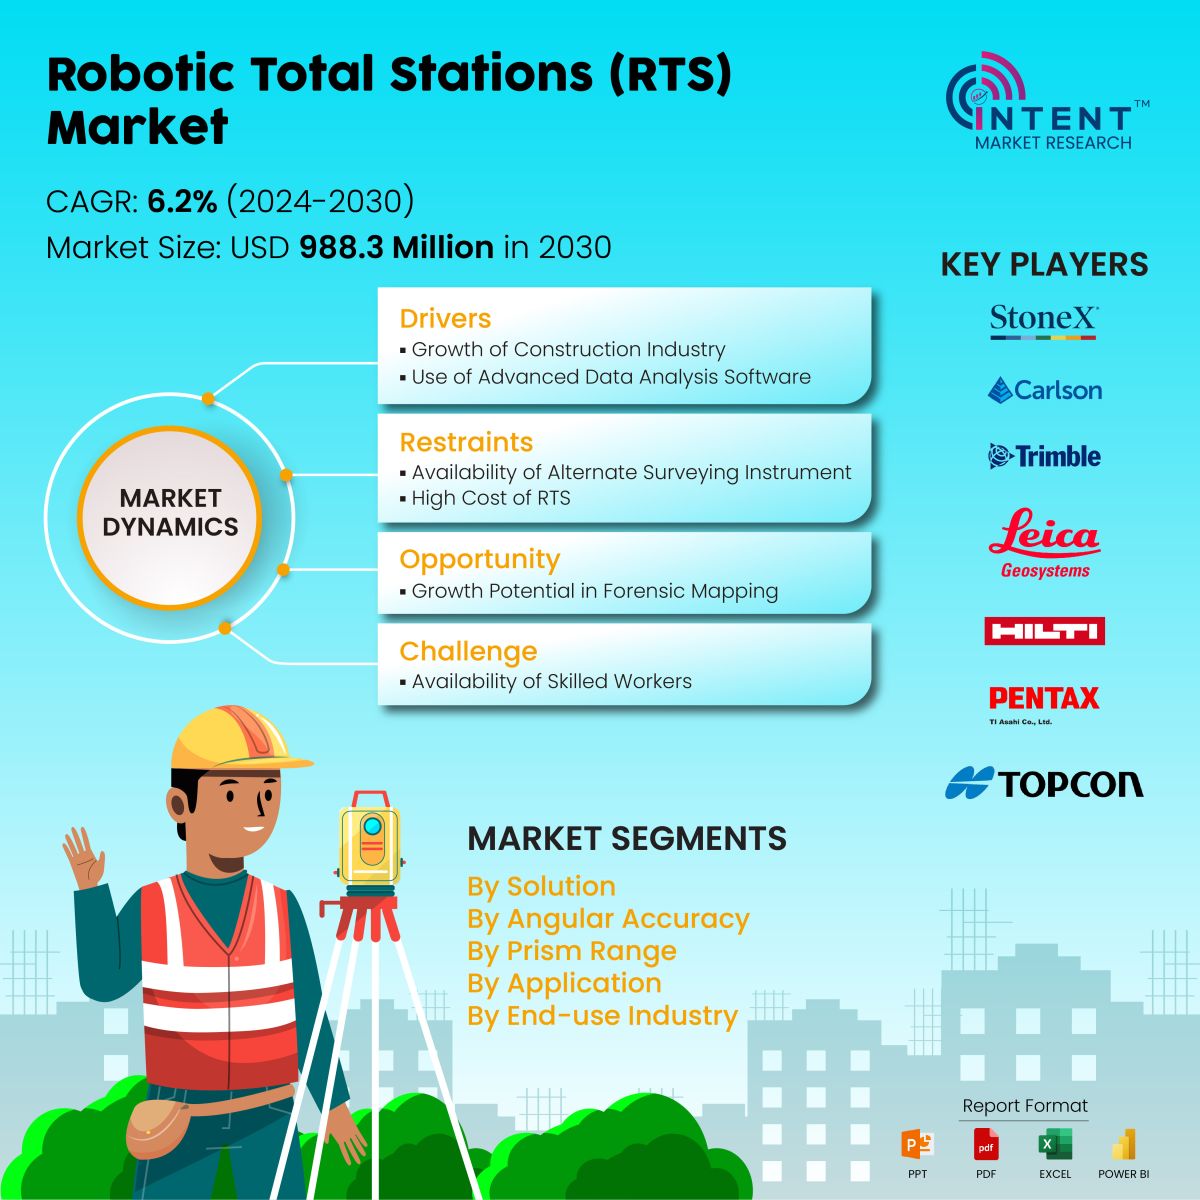 Robotic Total Stations Market Infoghraphics